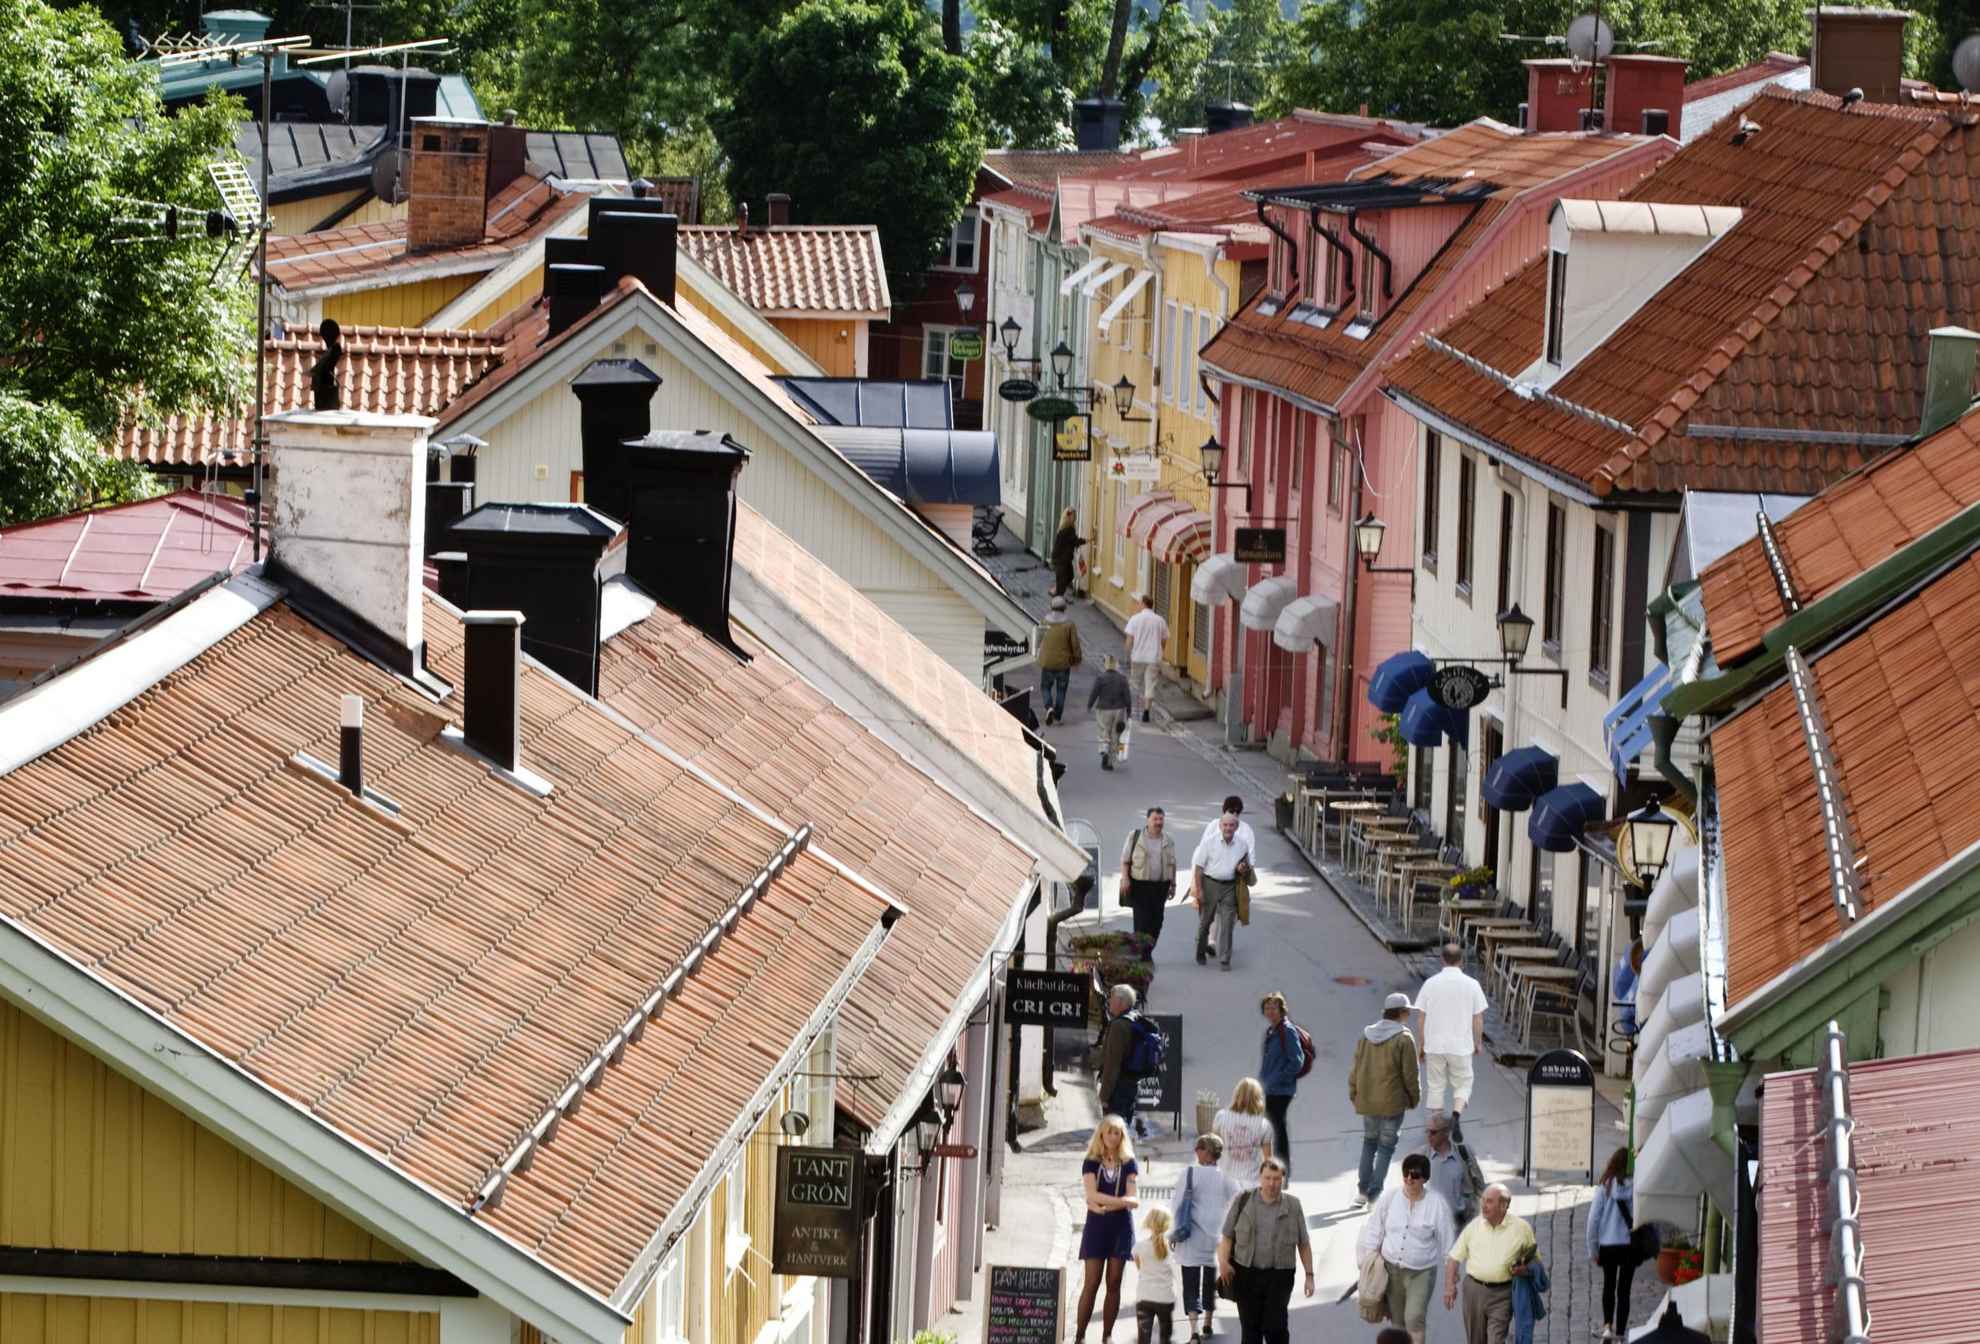 Houten huizen in verschillende kleuren op een smal straatje in Sigtuna, mensen lopen op straat.